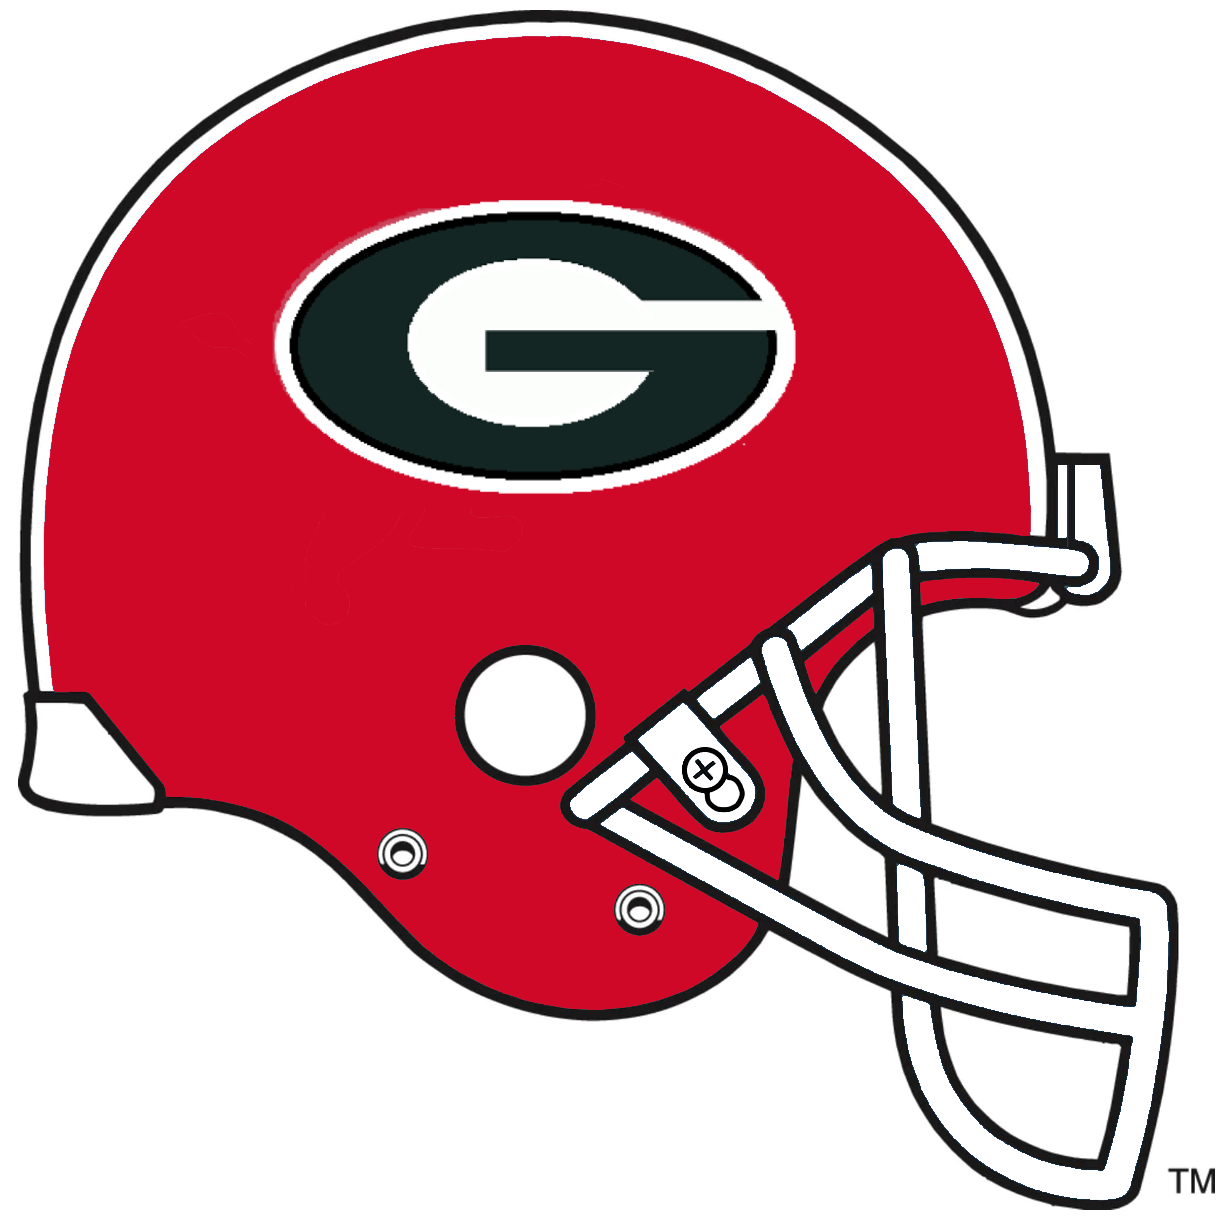 Georgia Bulldogs - Wikipedia